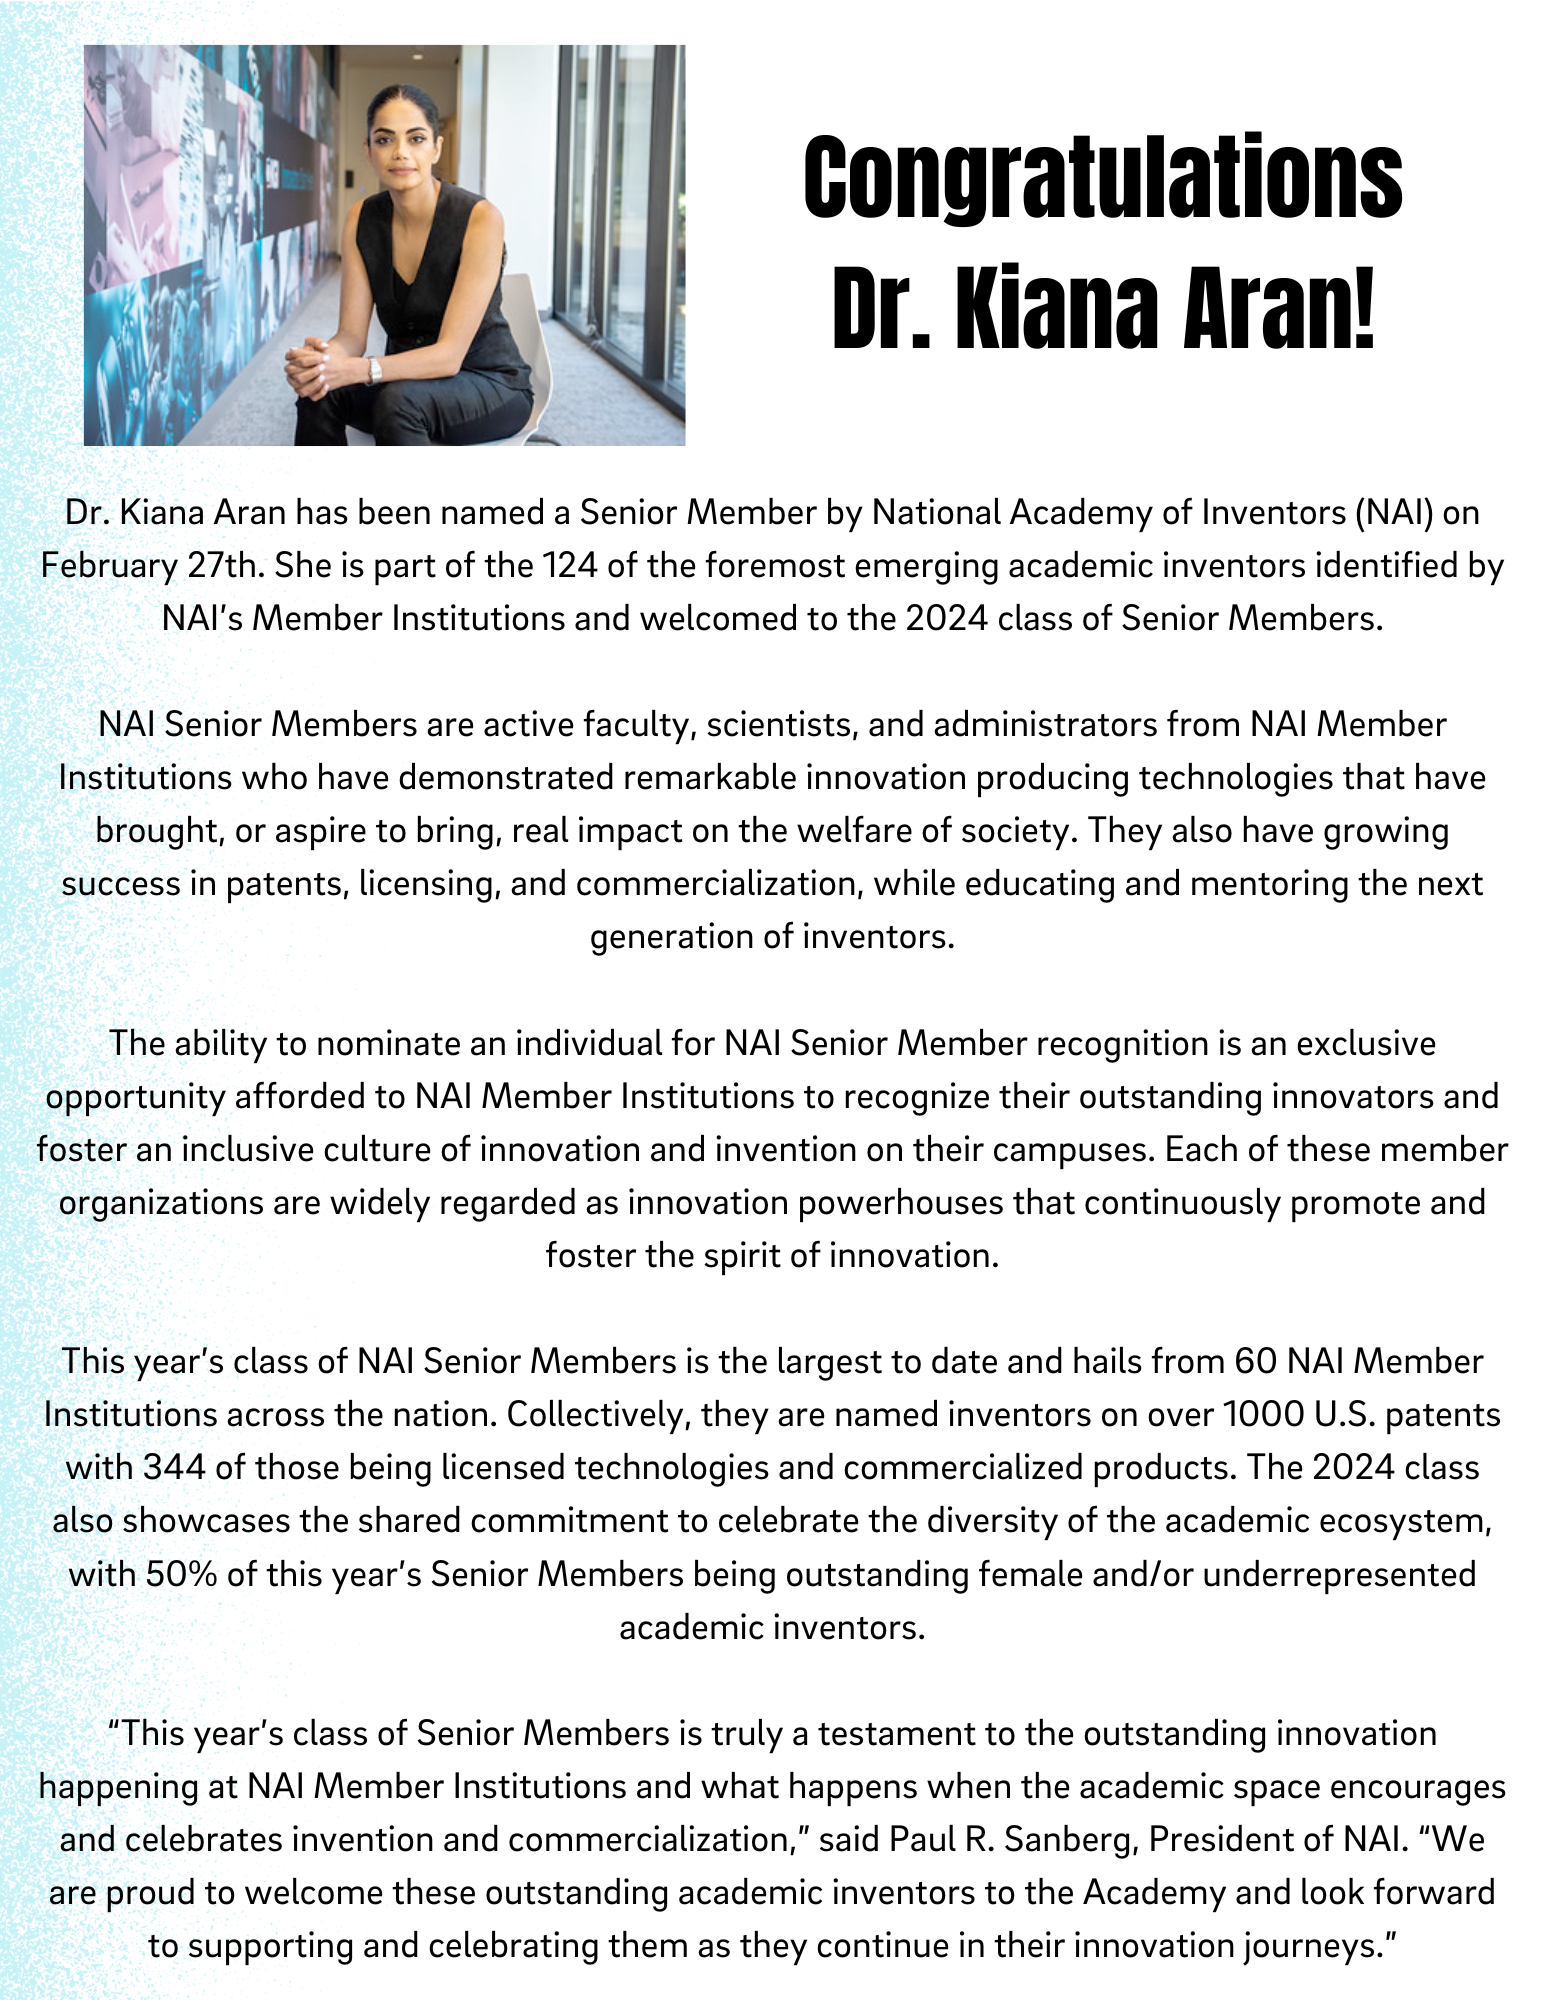 Kiana Aran congrats